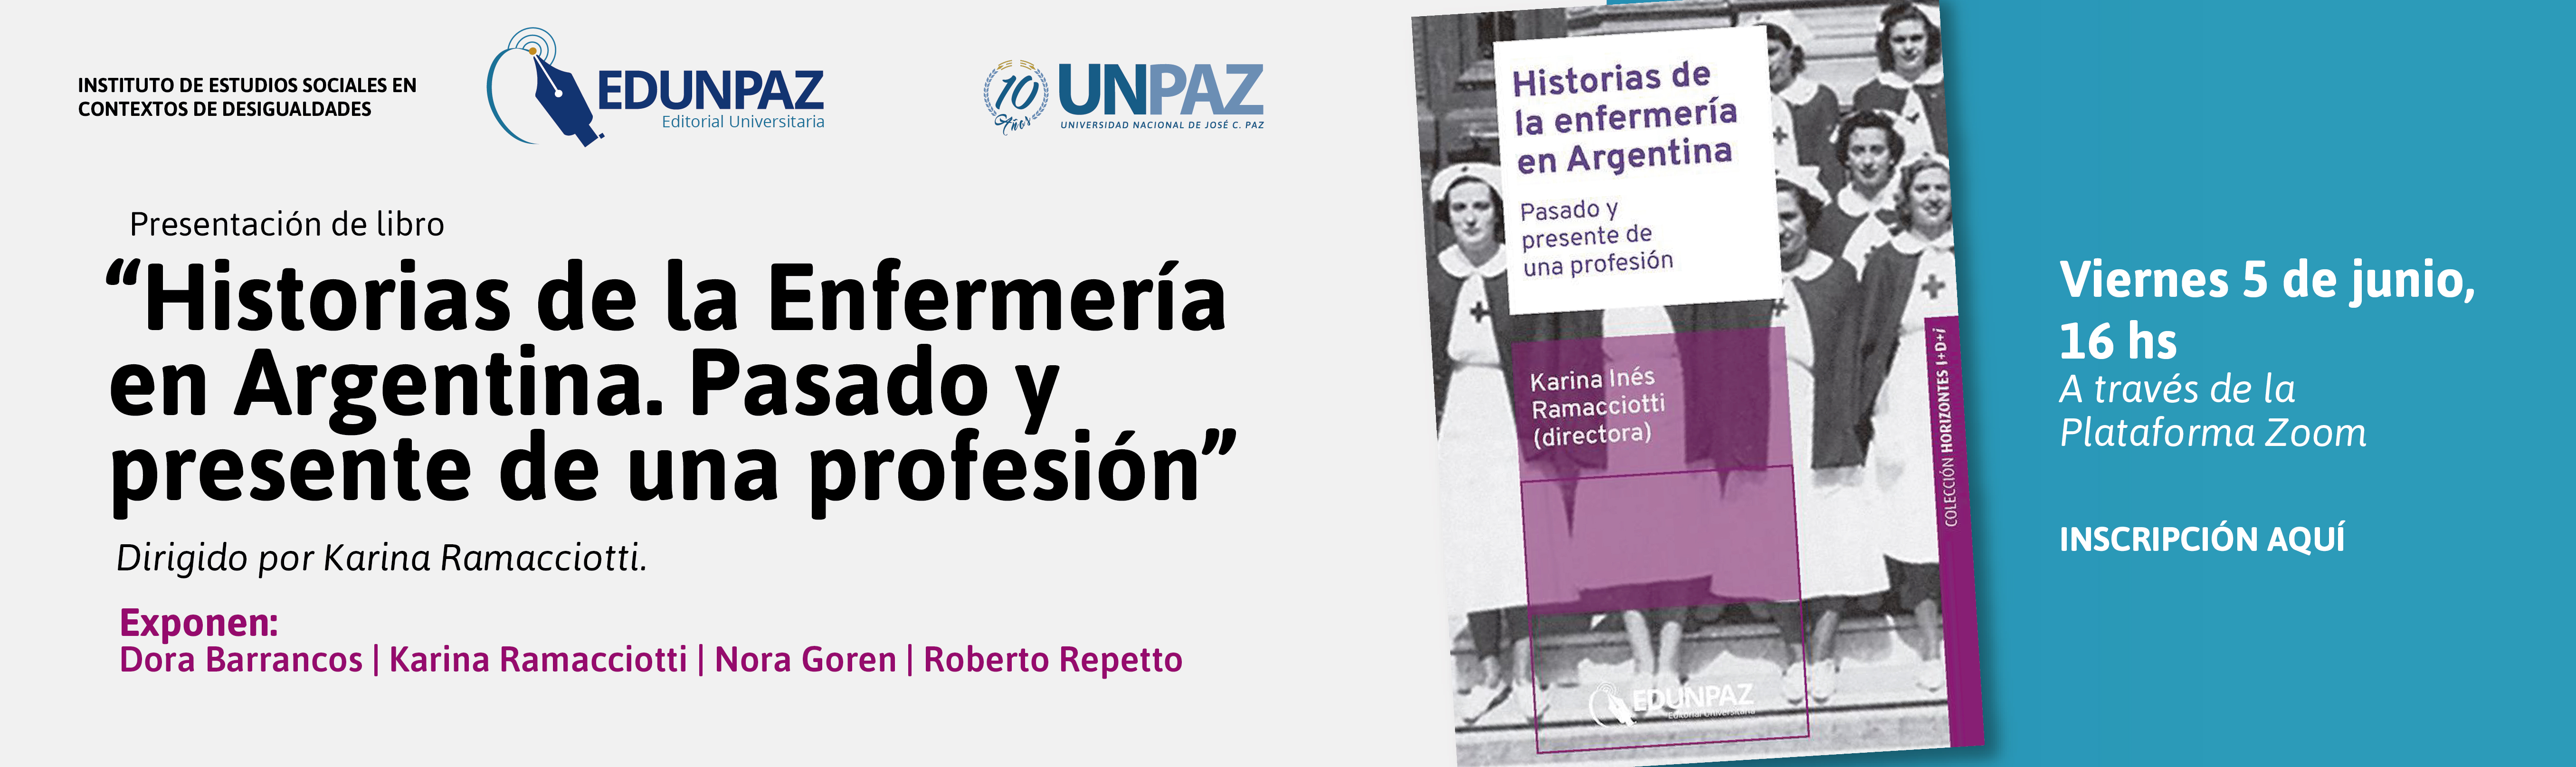 Presentación de libro "Historias de la enfermería en Argentina"